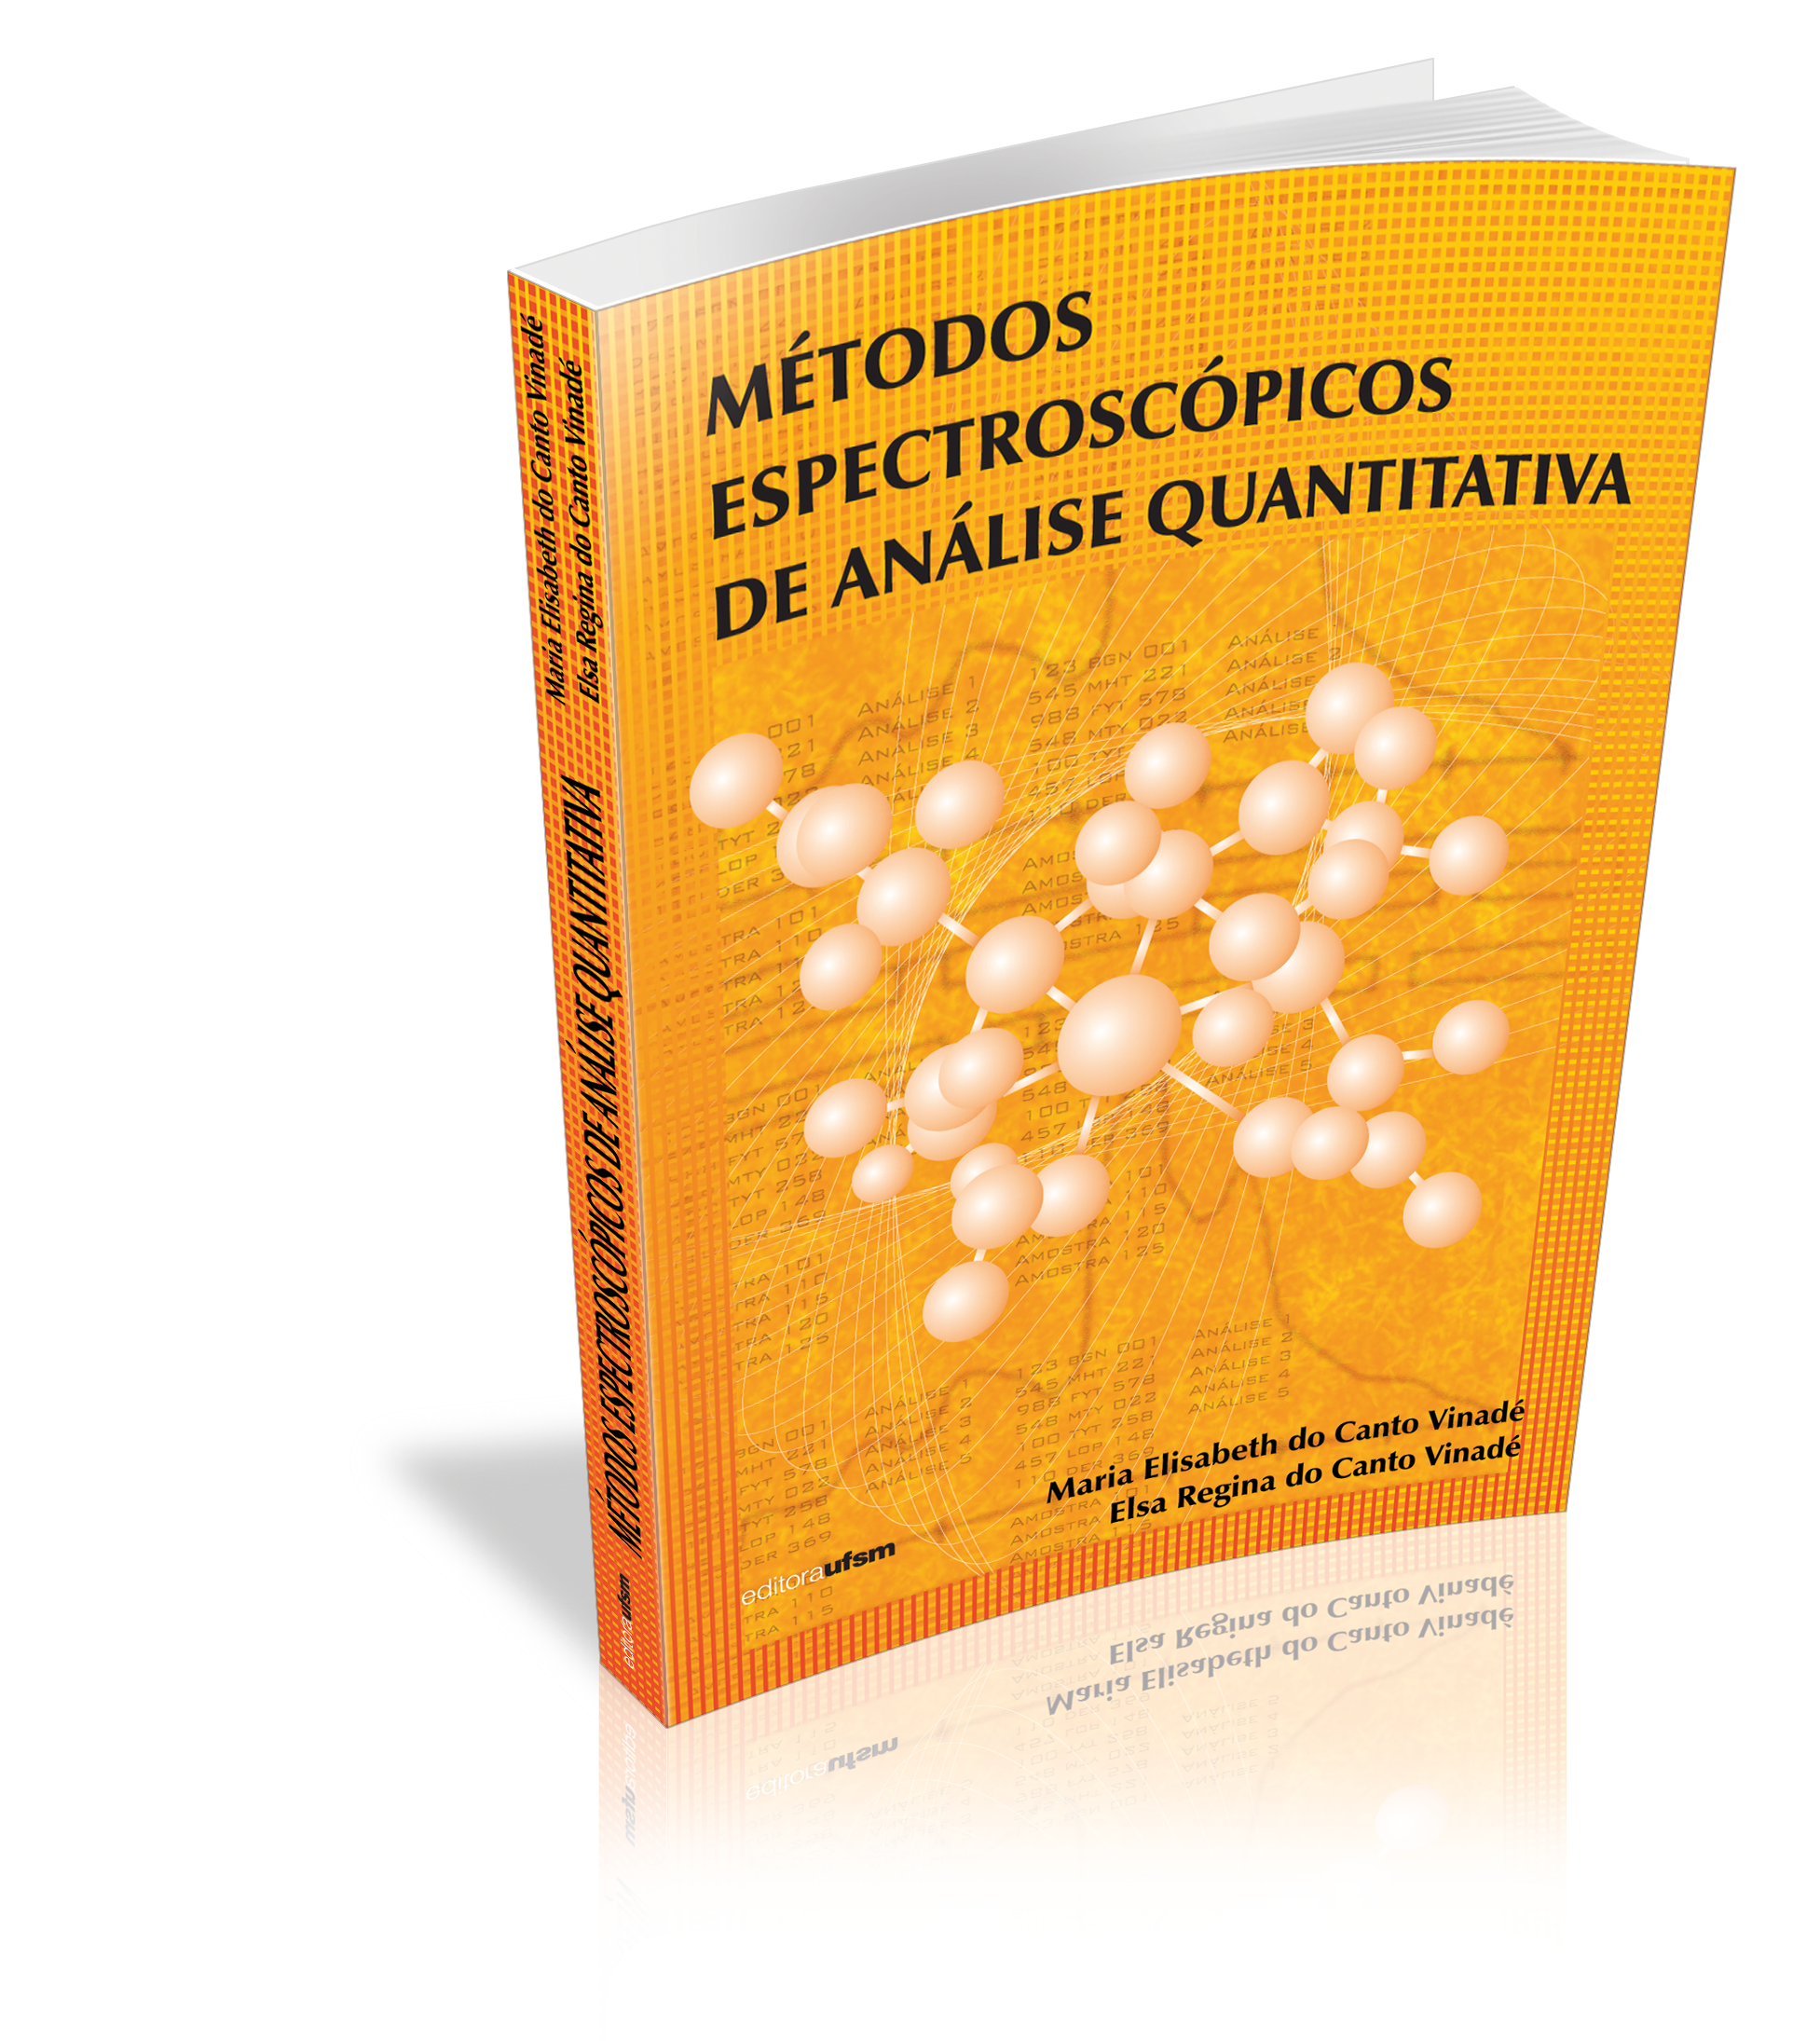 Capa do livro Métodos Espectroscópicos de Análise Quantitativa